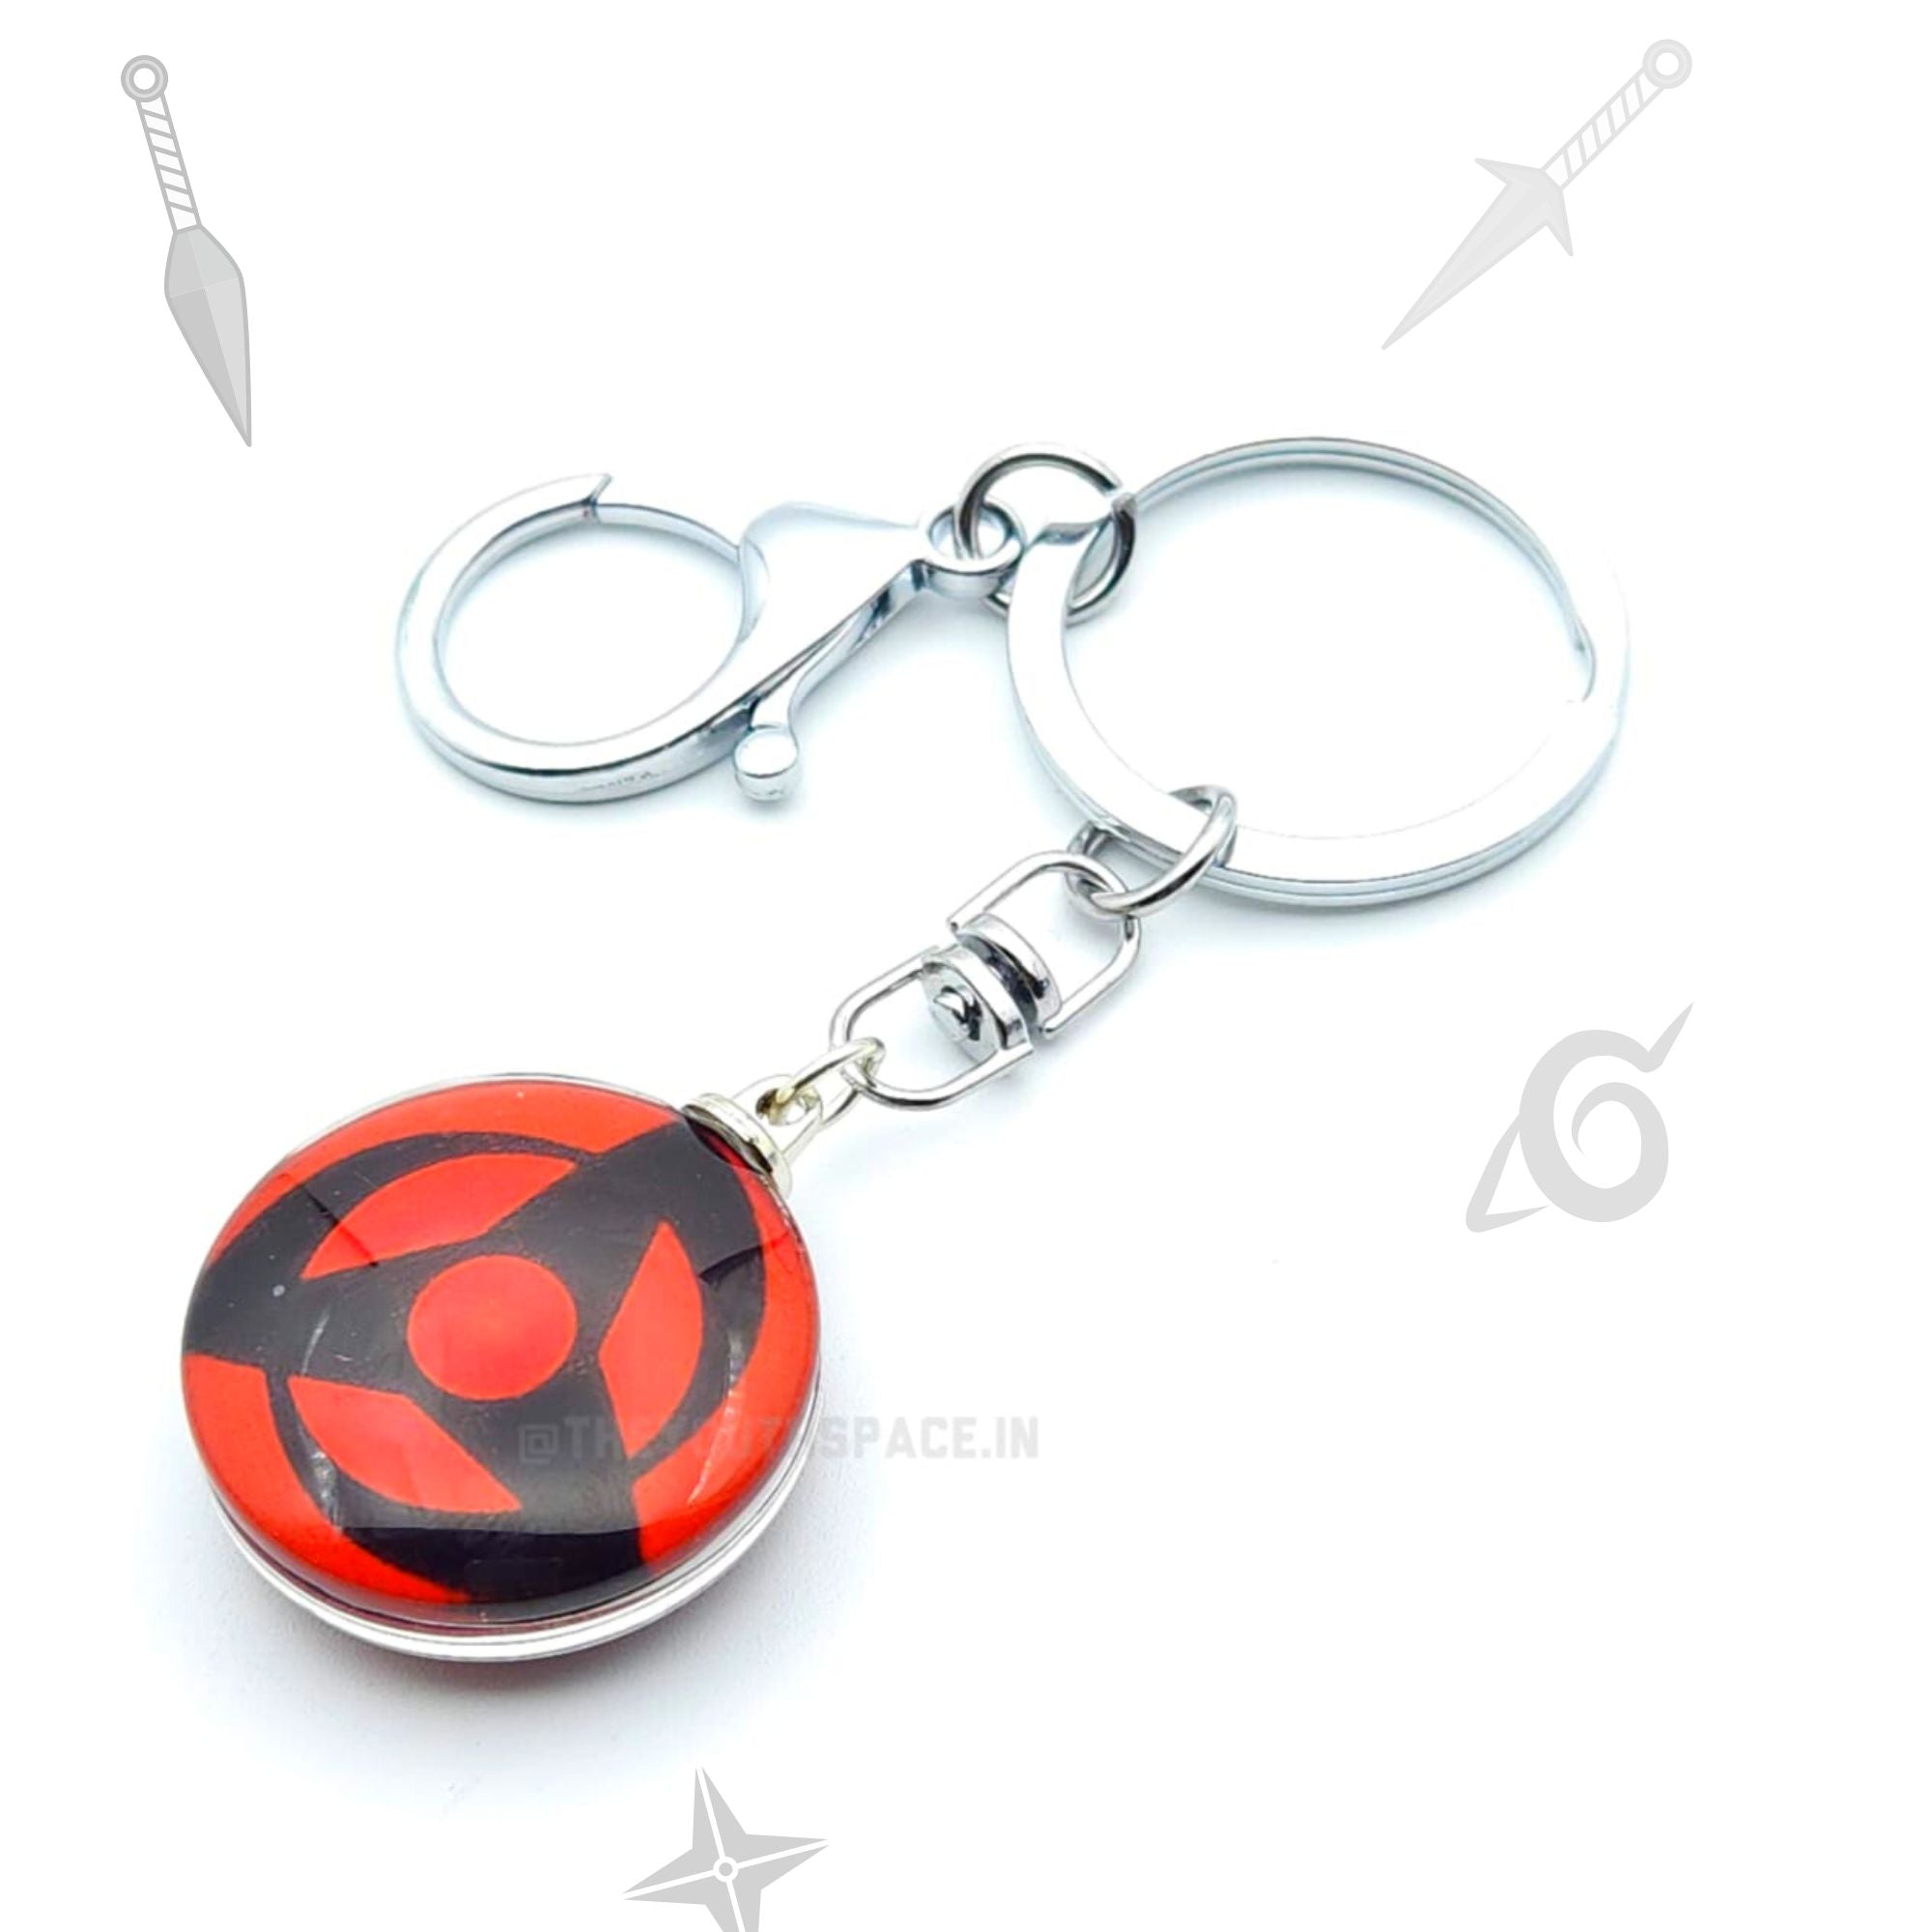 Obito's sharingan keychain